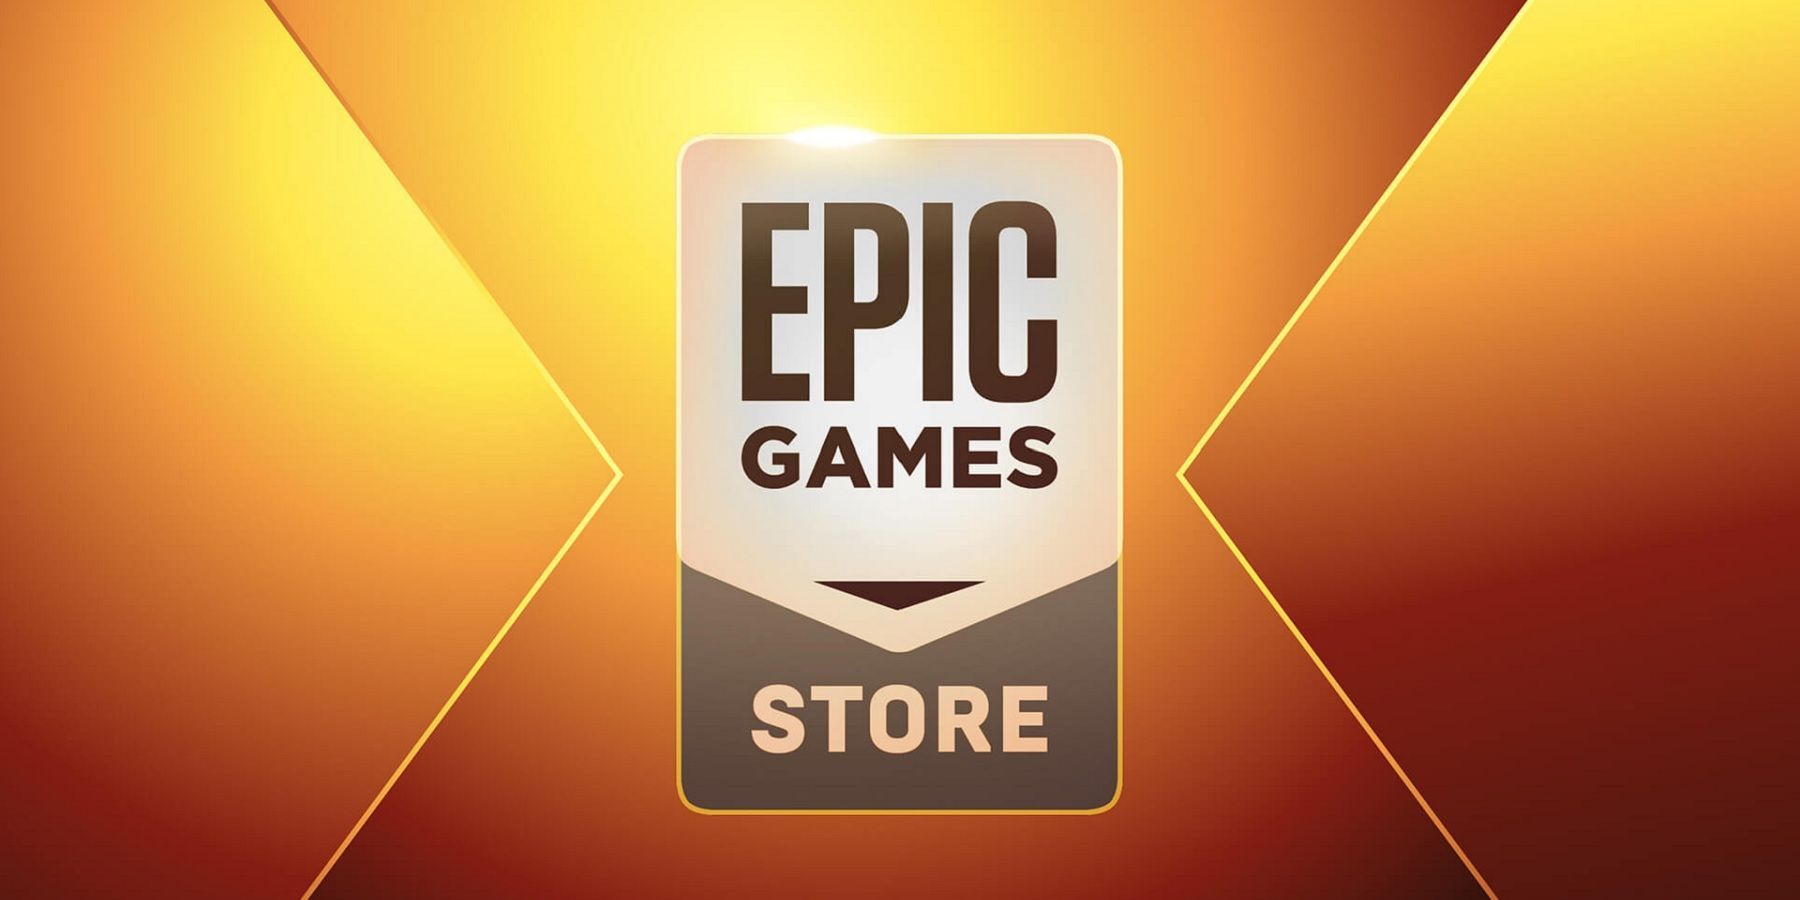 Две бесплатные игры в магазине Epic Games за 15 сентября объяснены